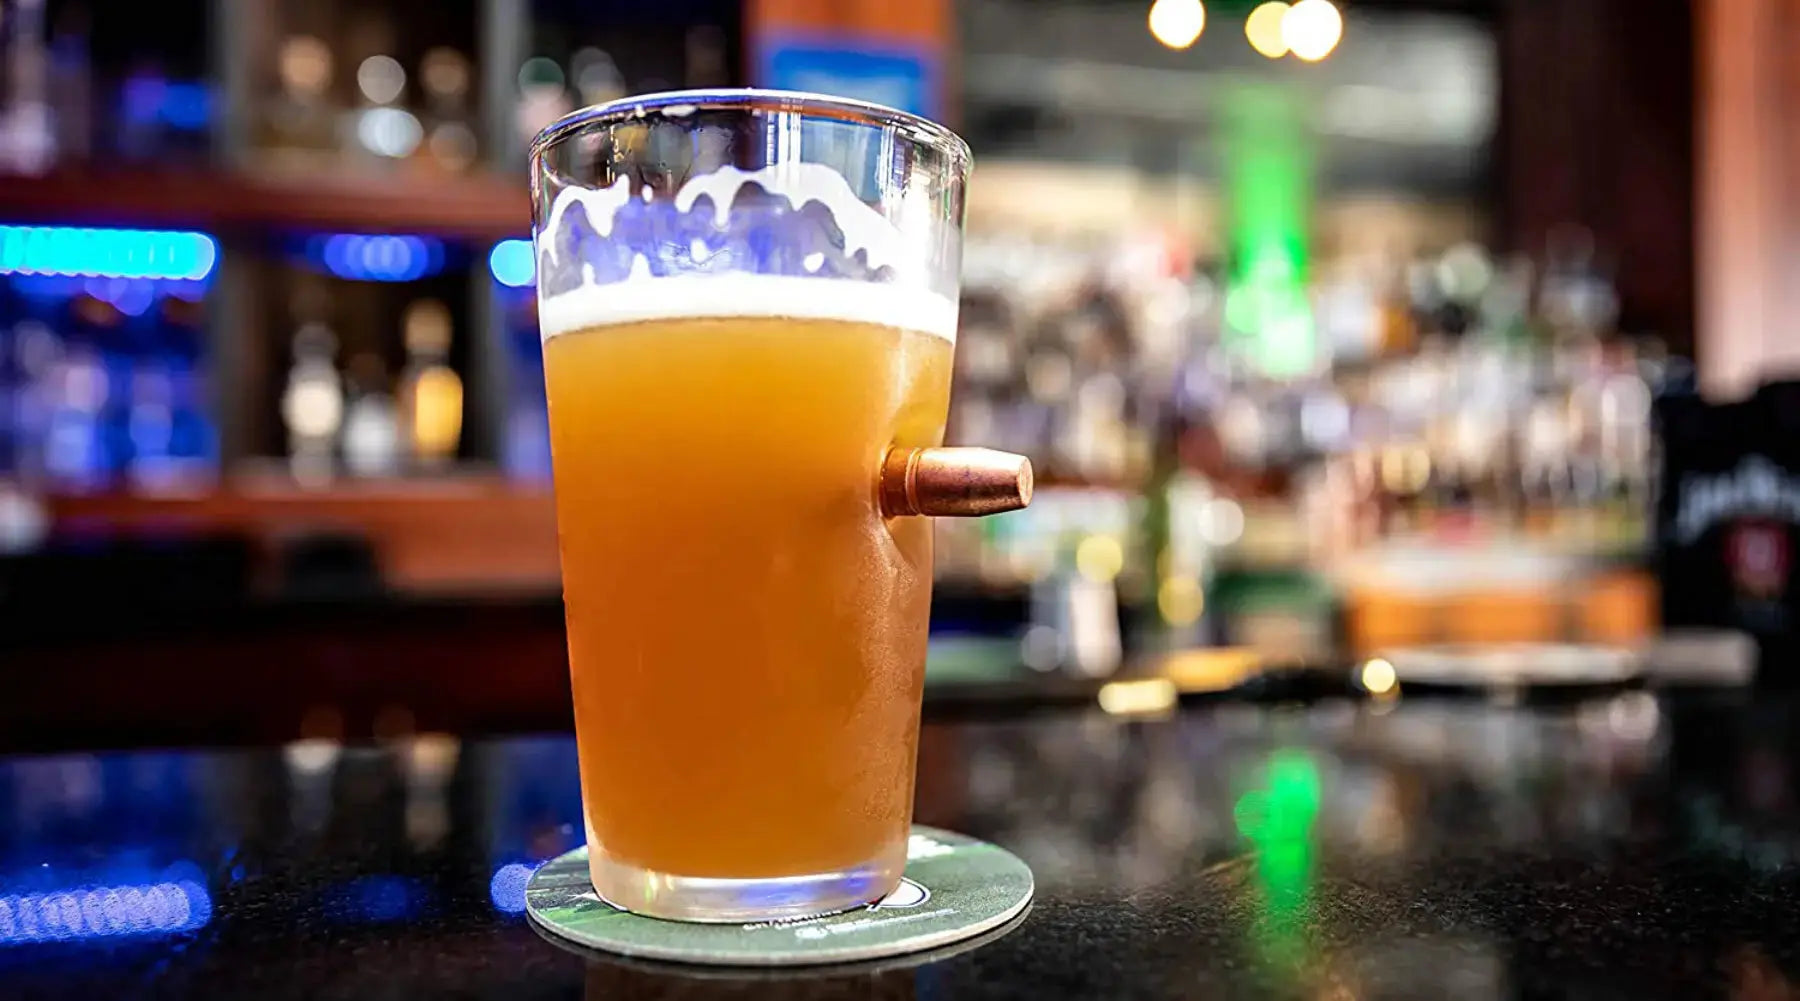 Het verschil tussen en de inhoud van een bier Pint, een bier vaasje en een bier fluitje Shots Fired®